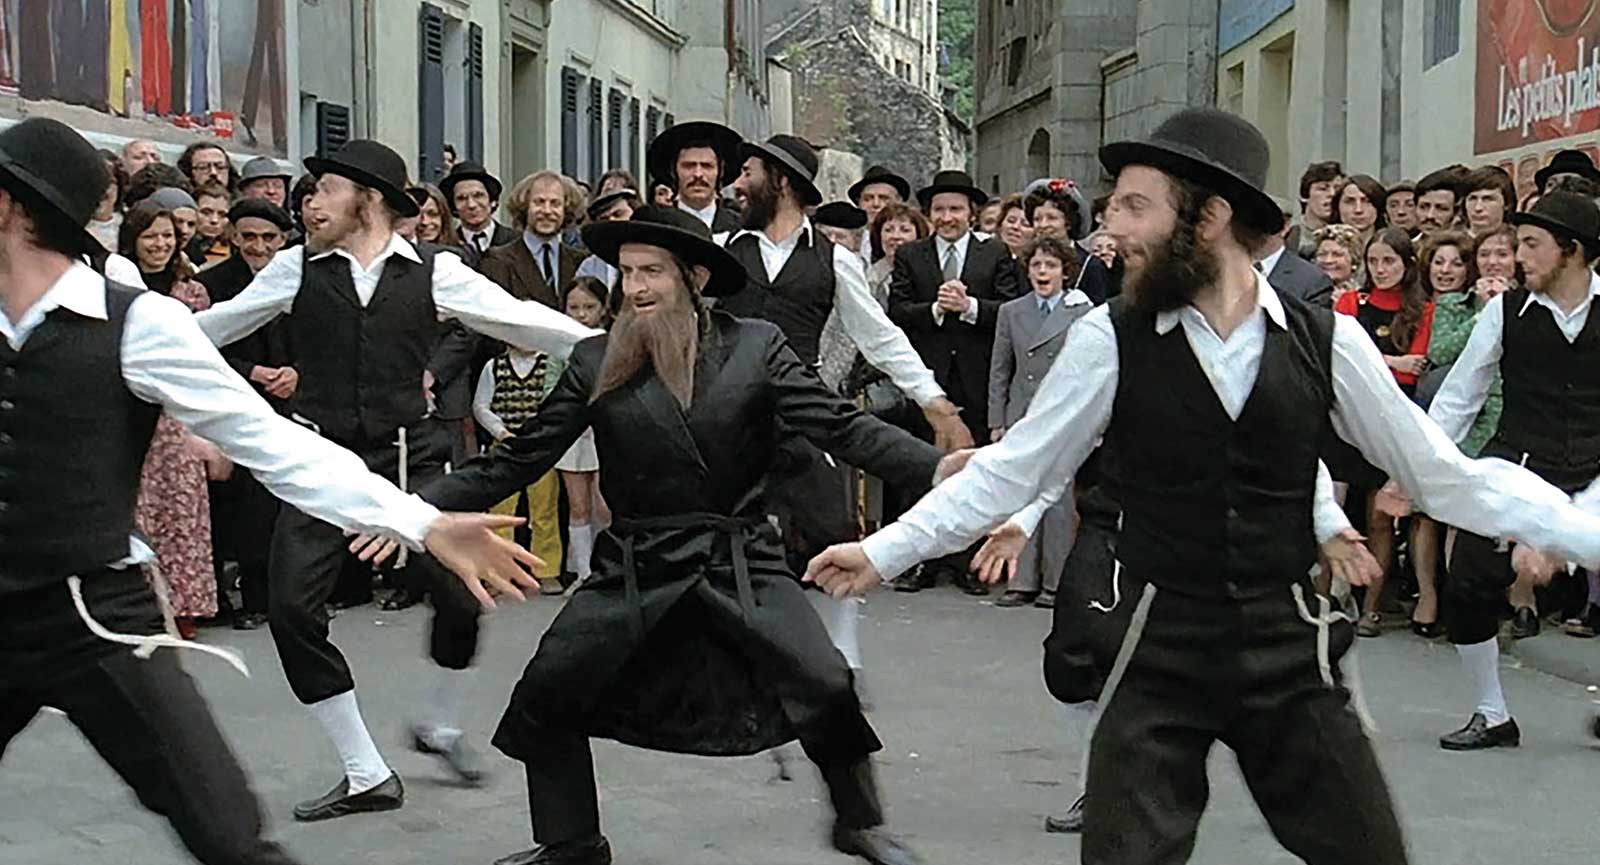 Les aventures de Rabbi Jacob - Cinéma Les Étoiles - Bruay la Buissière